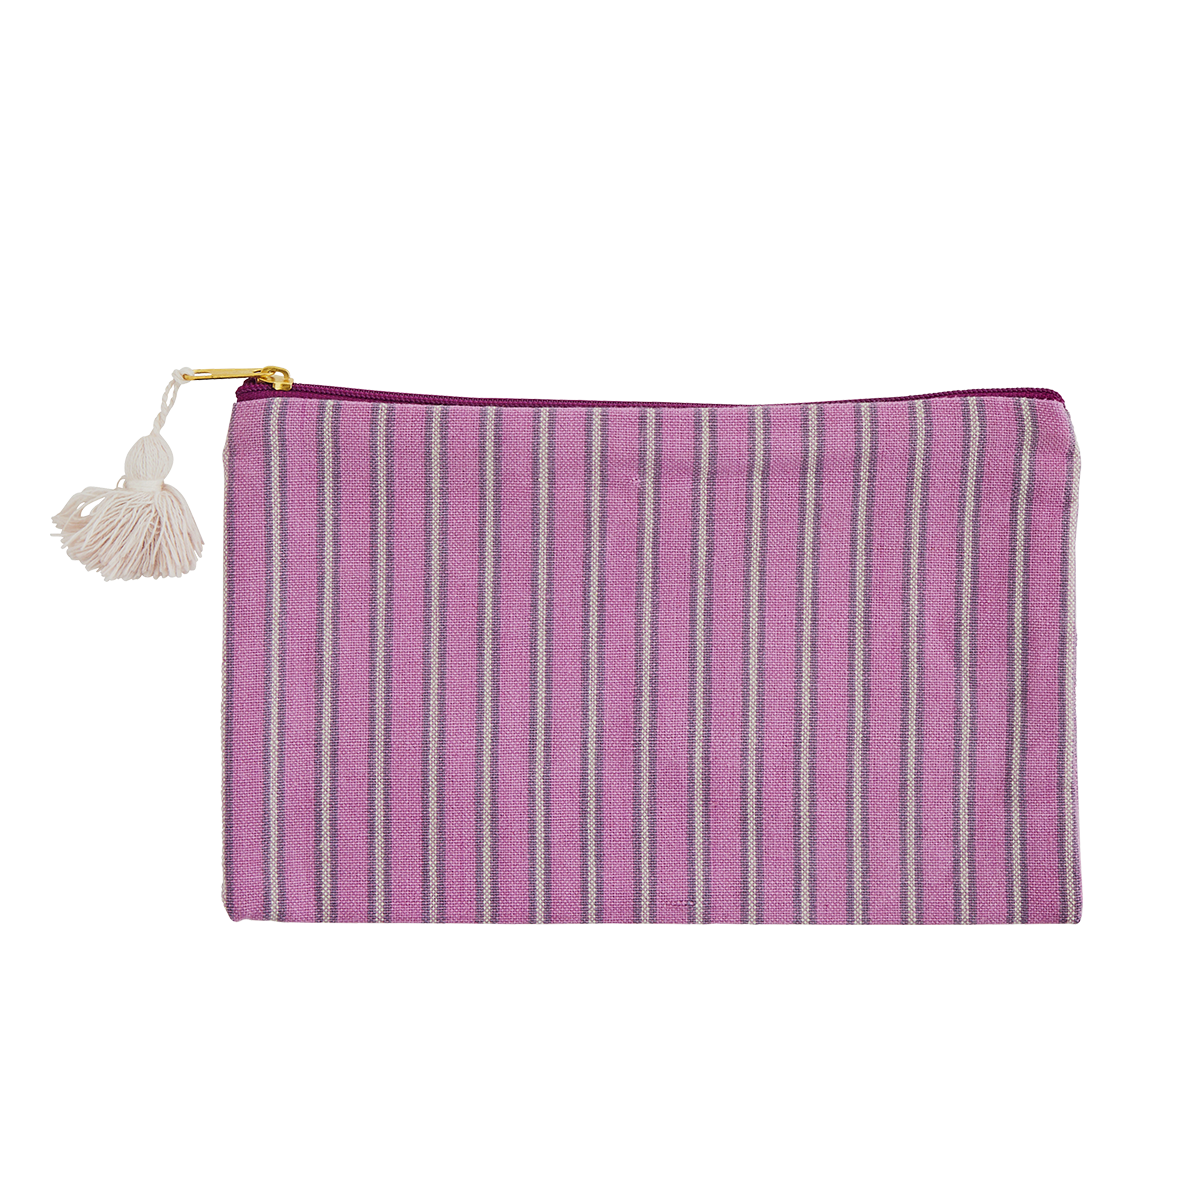 Striped cotton purse